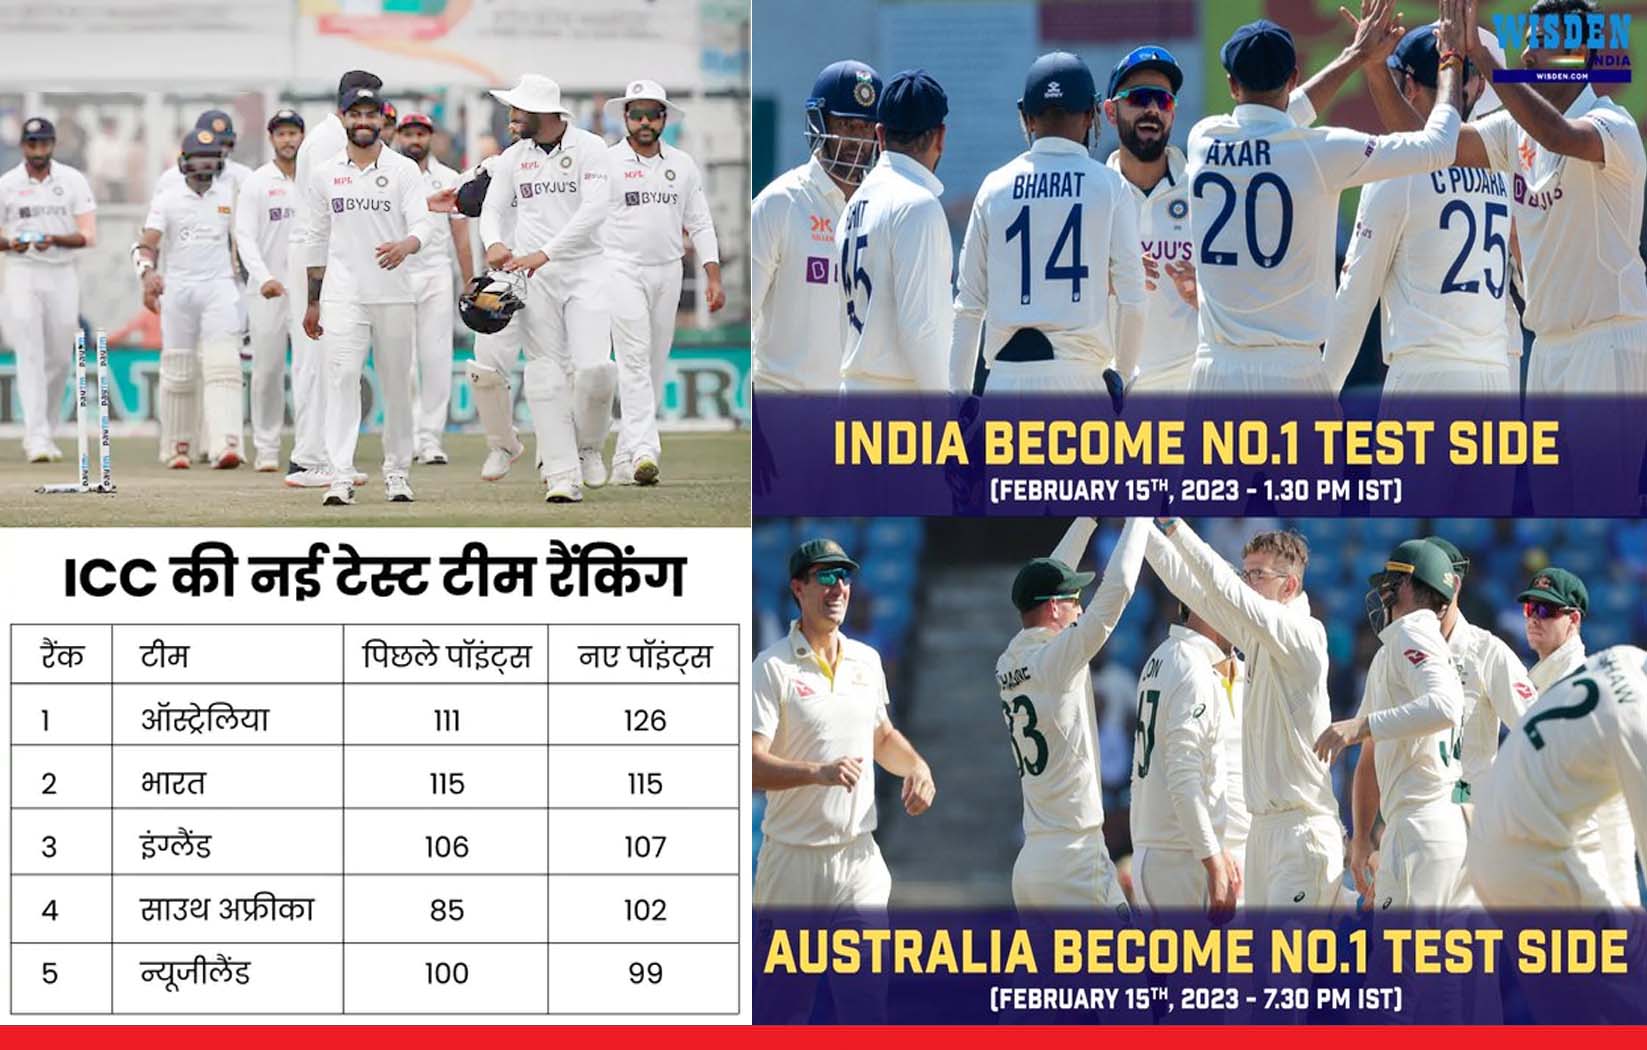 ICC की बड़ी गलती से भारत की 6 घंटे की बादशाहत, अब ऑस्ट्रेलिया टेस्ट में टॉप पर